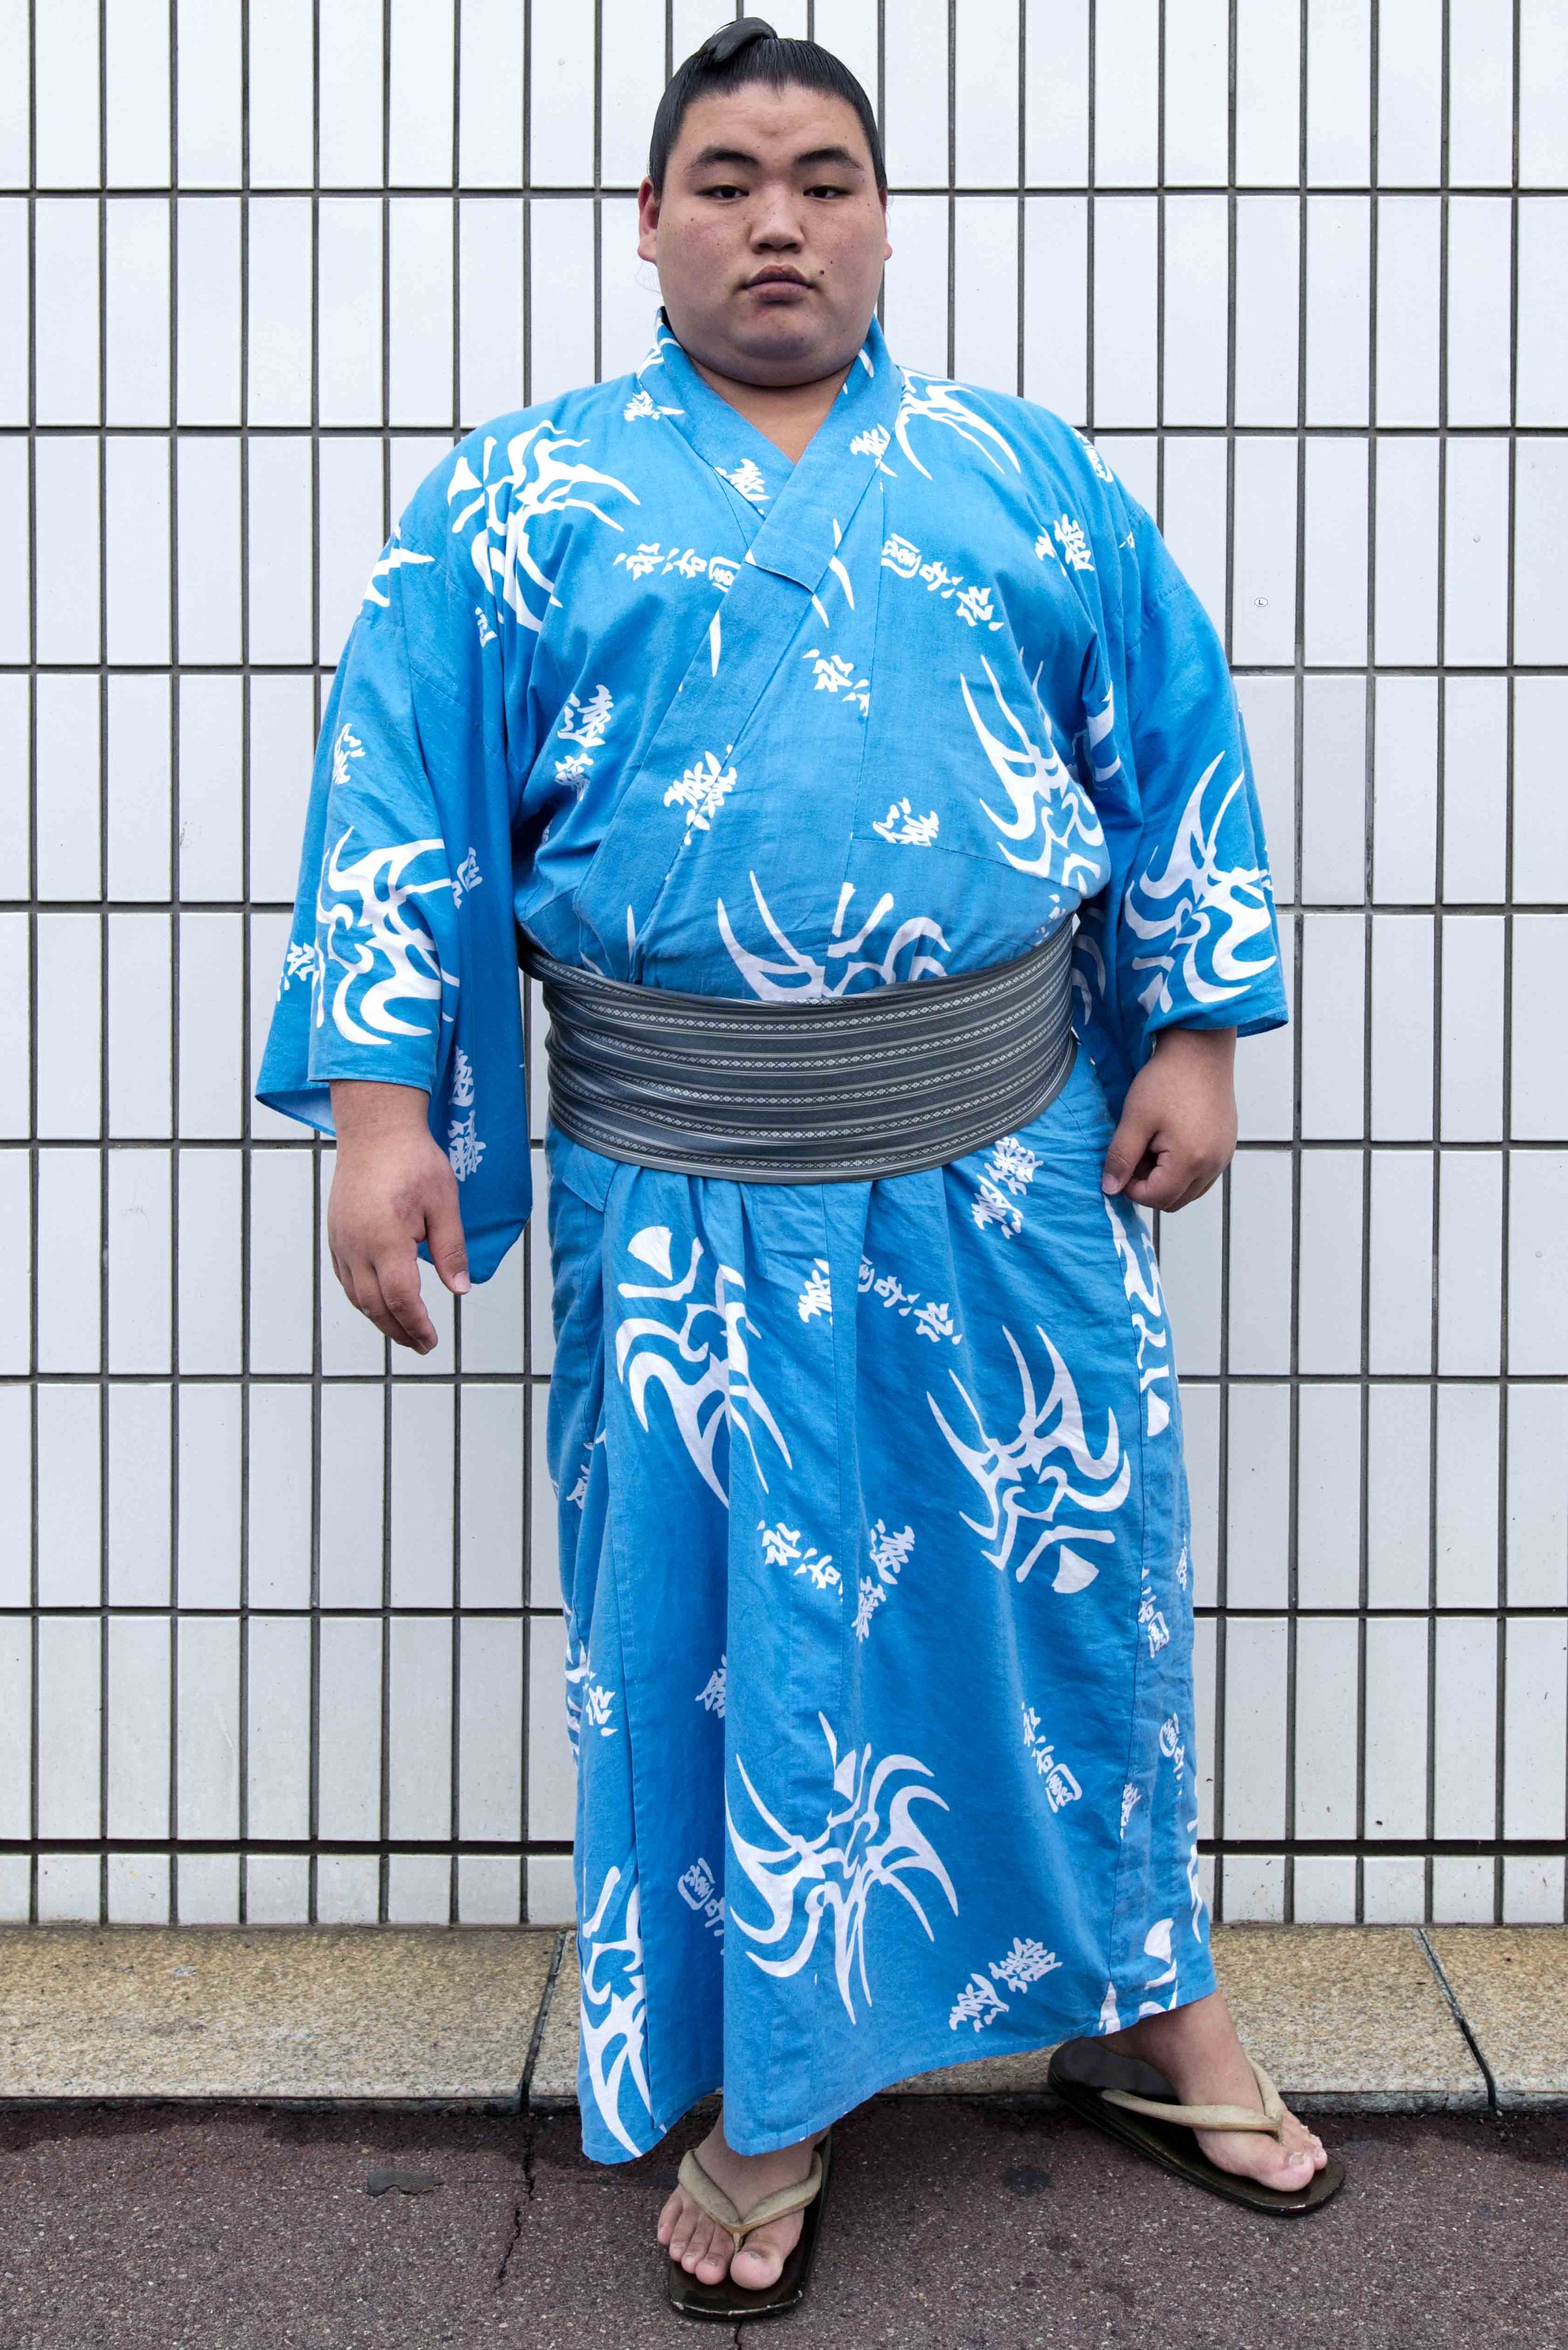 sumo wrestling japan.jpg